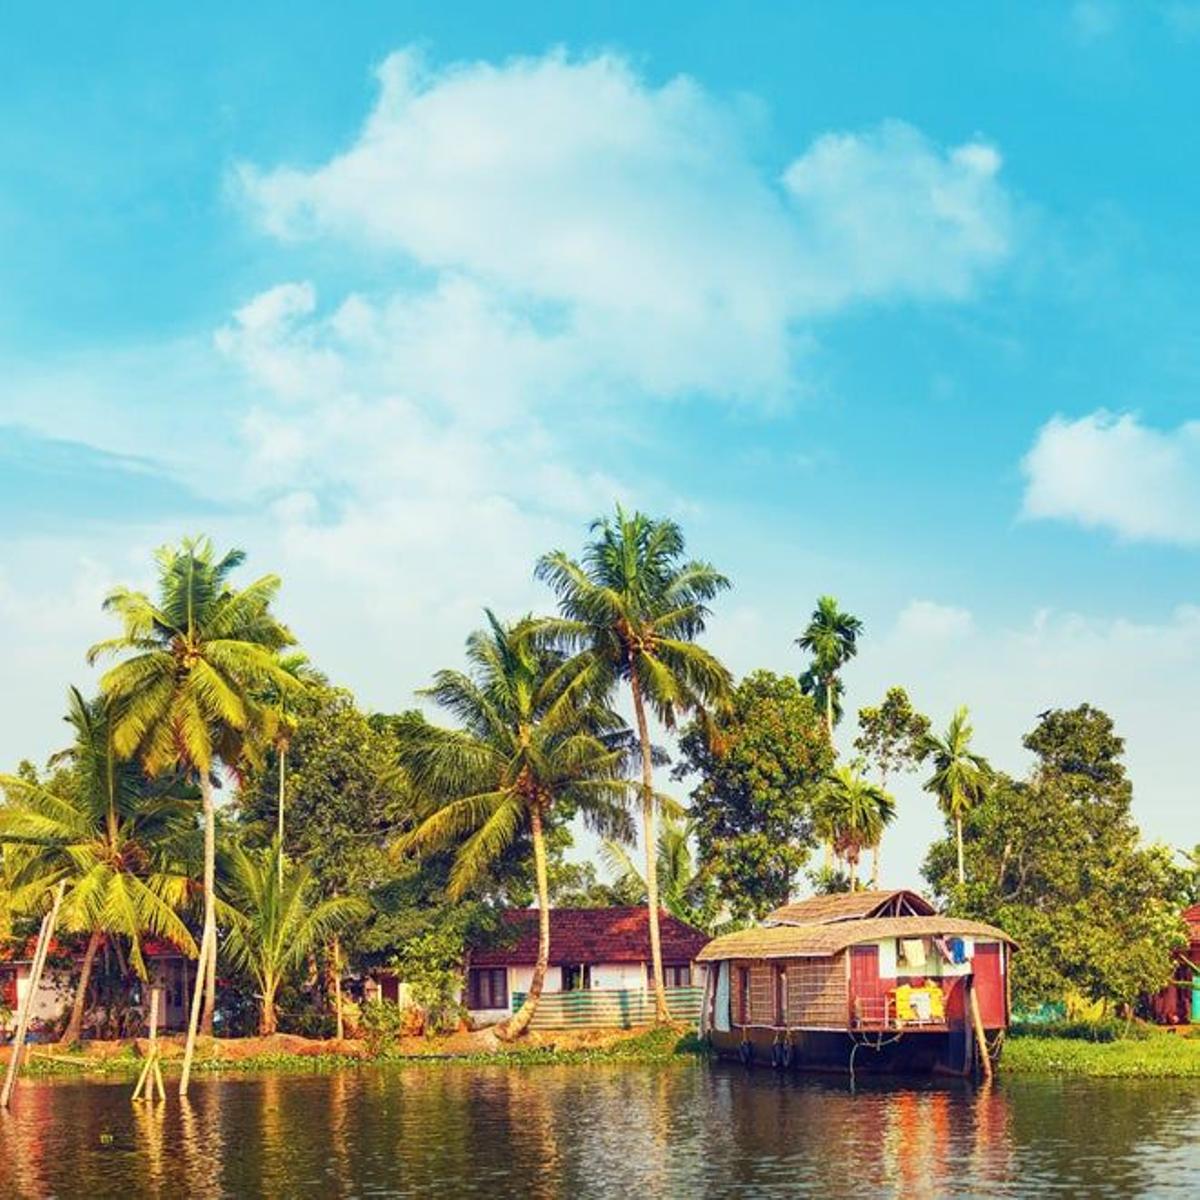 Canales de Kerala (India)